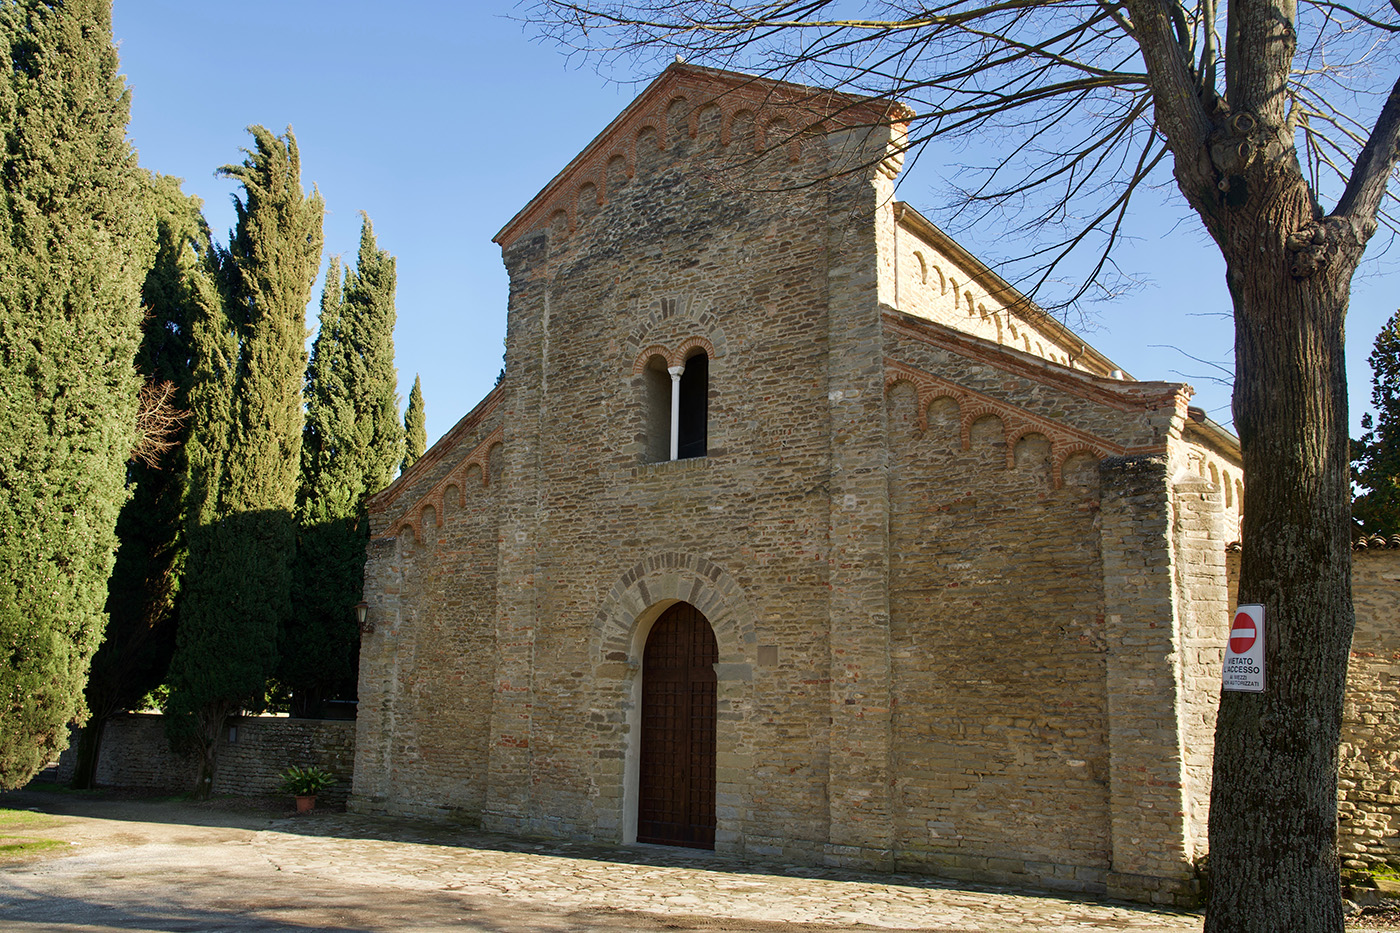 L'abbazia di Valsanio, la più famosa delle chiese Casola. Si vede la facciata romanica dell'edificio, con la classica forma a capanna.